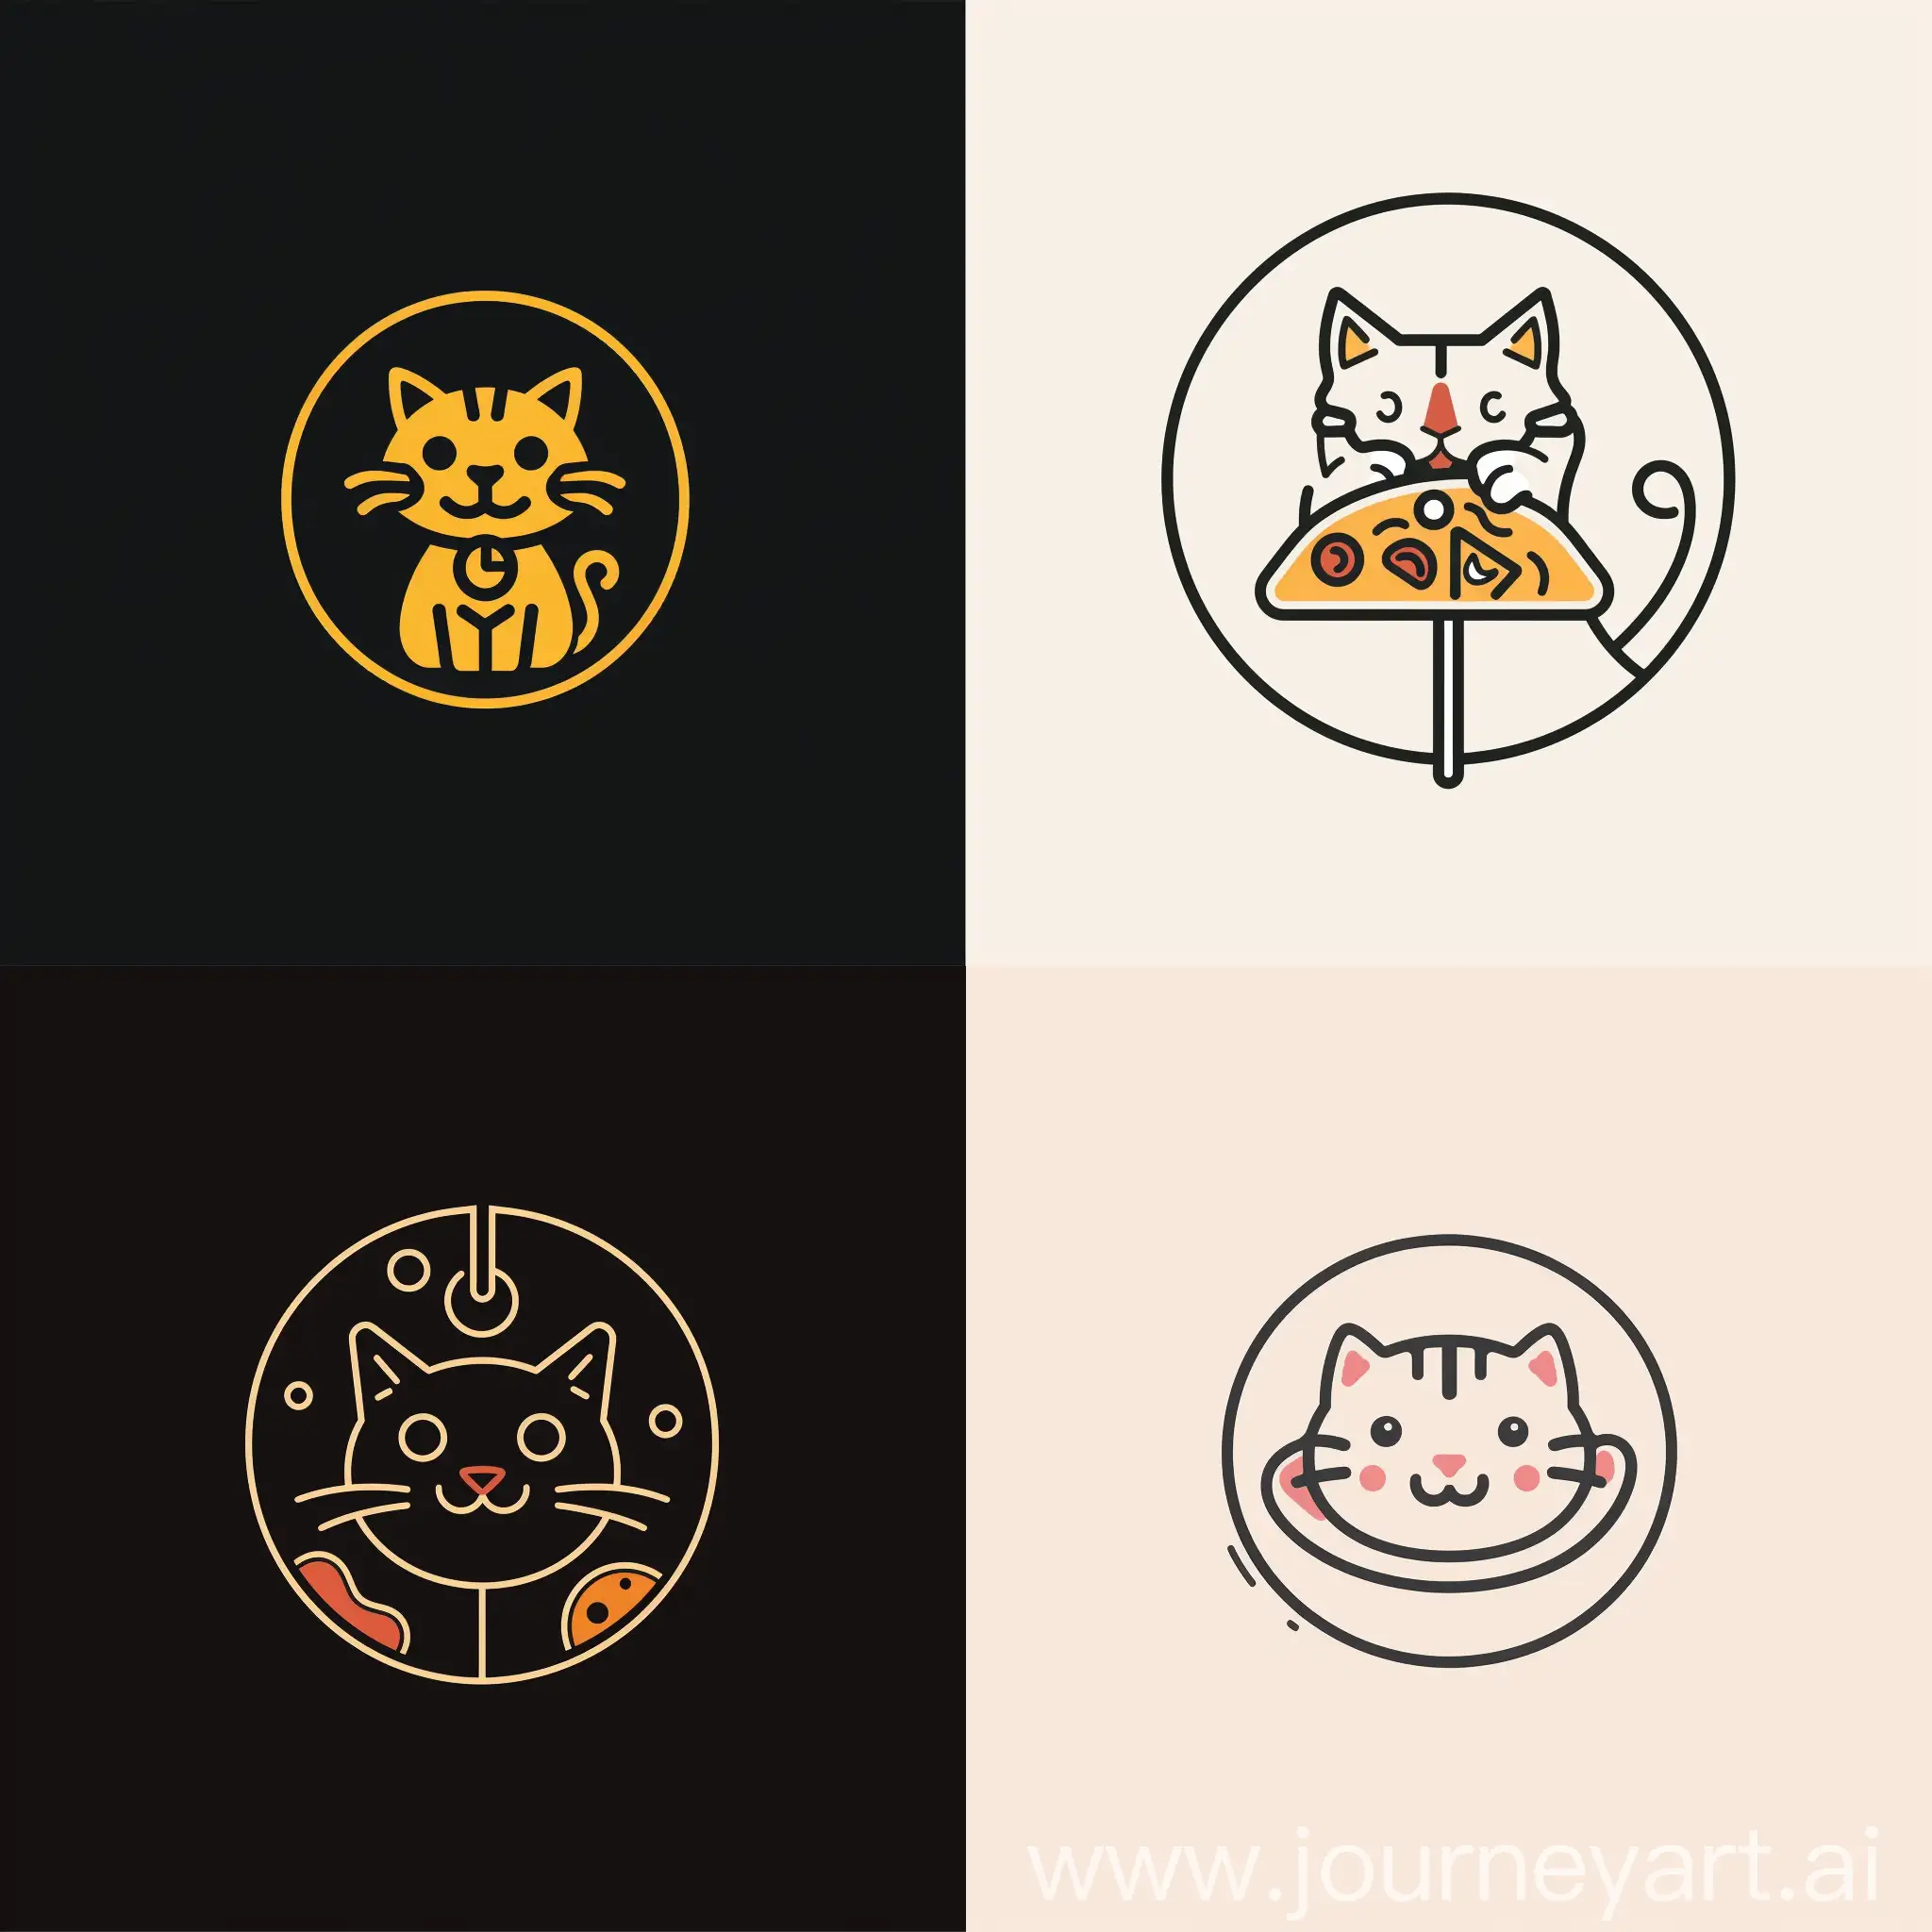 Minimalistic-Modern-Pizzeria-Logo-with-Cat-Theme